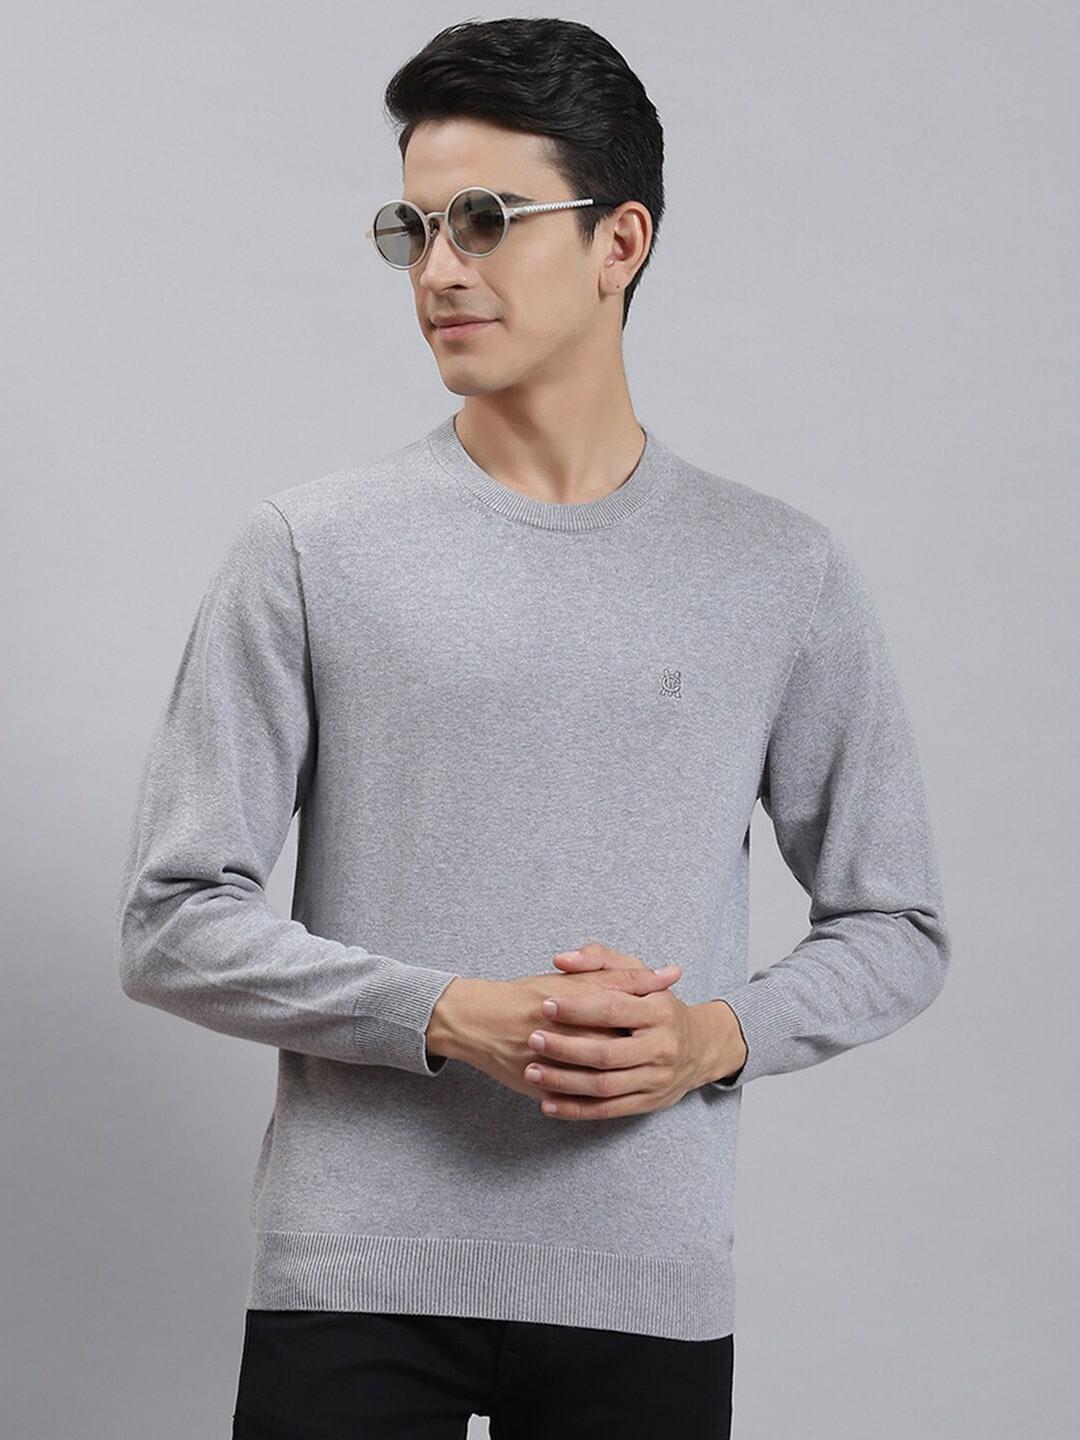 monte-carlo-round-neck-cotton-pullover-sweater